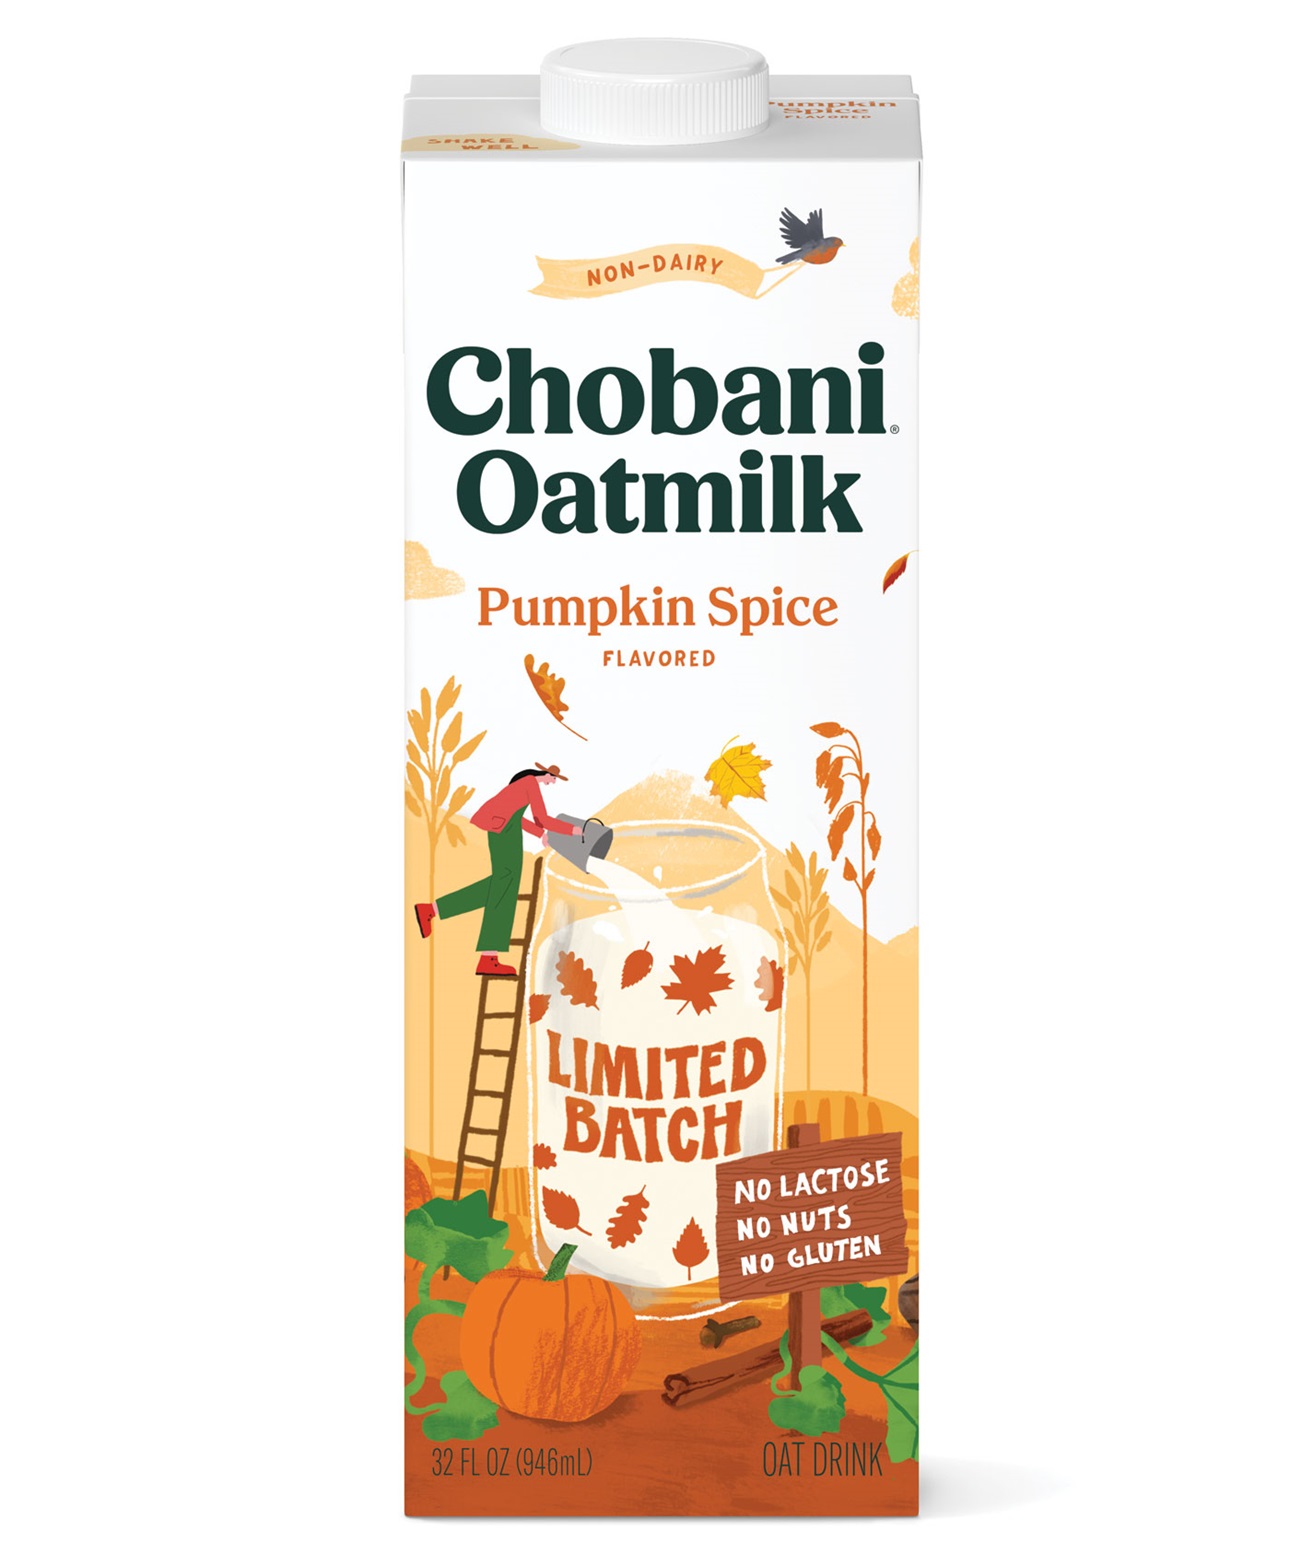 Chobani Oatmilk Pumpkin Spice, a flavored oat milk drink